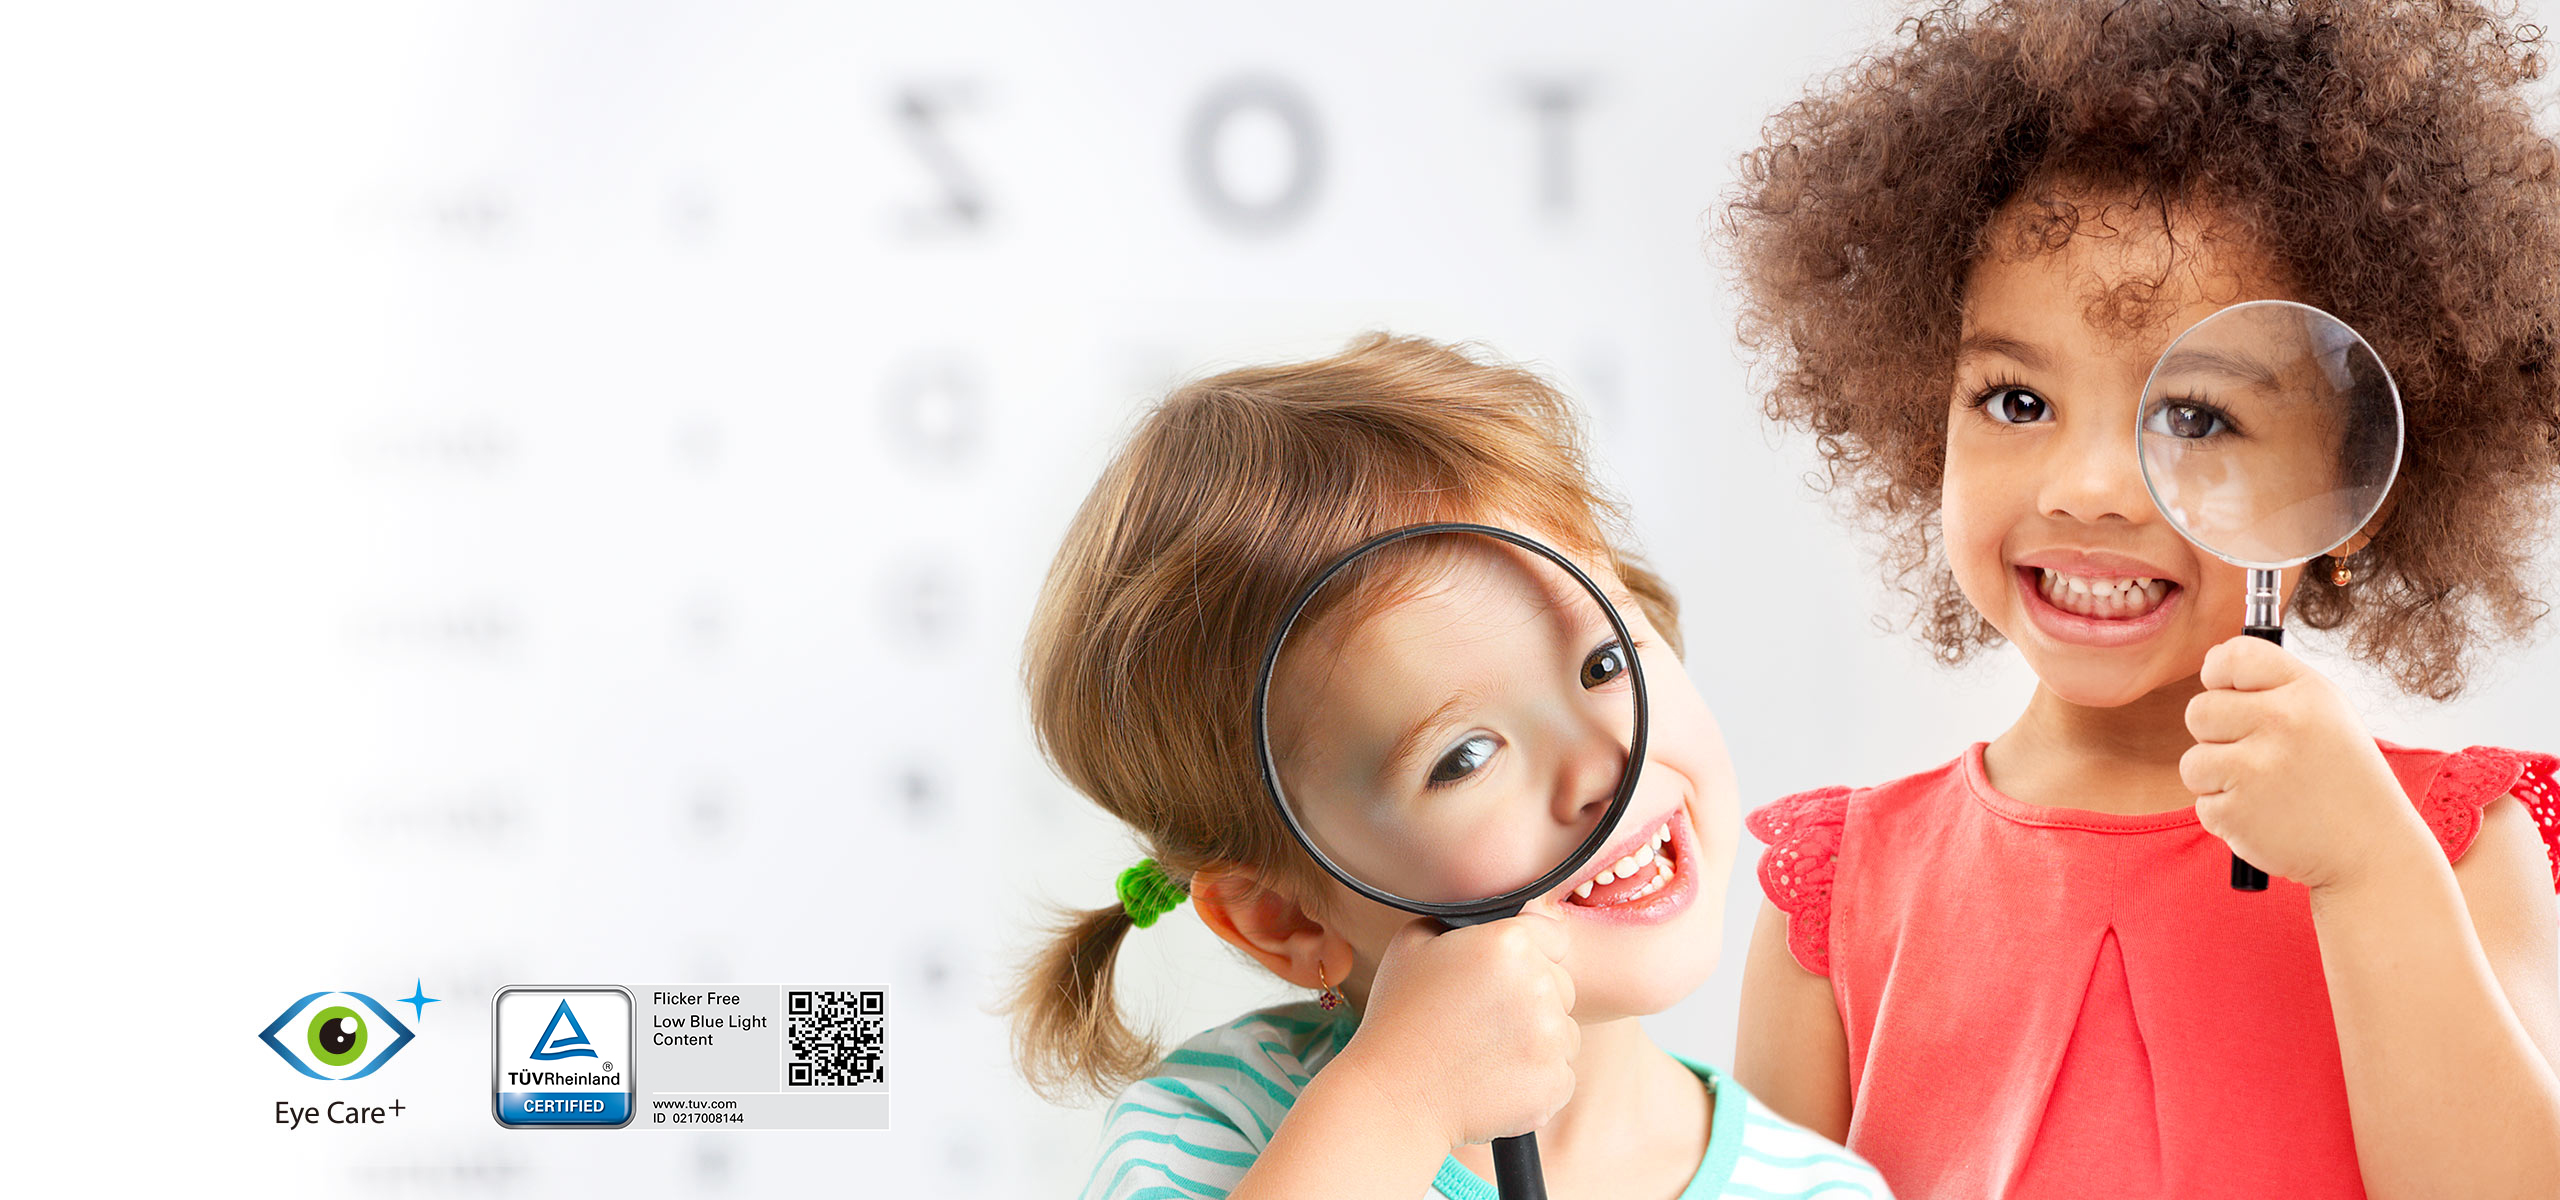 Deti skúmajú svet pomocou lupy so zdravými očami s ikonou technológie Eye Care Plus a ikonou TÚV s nízkym obsahom modrého svetla